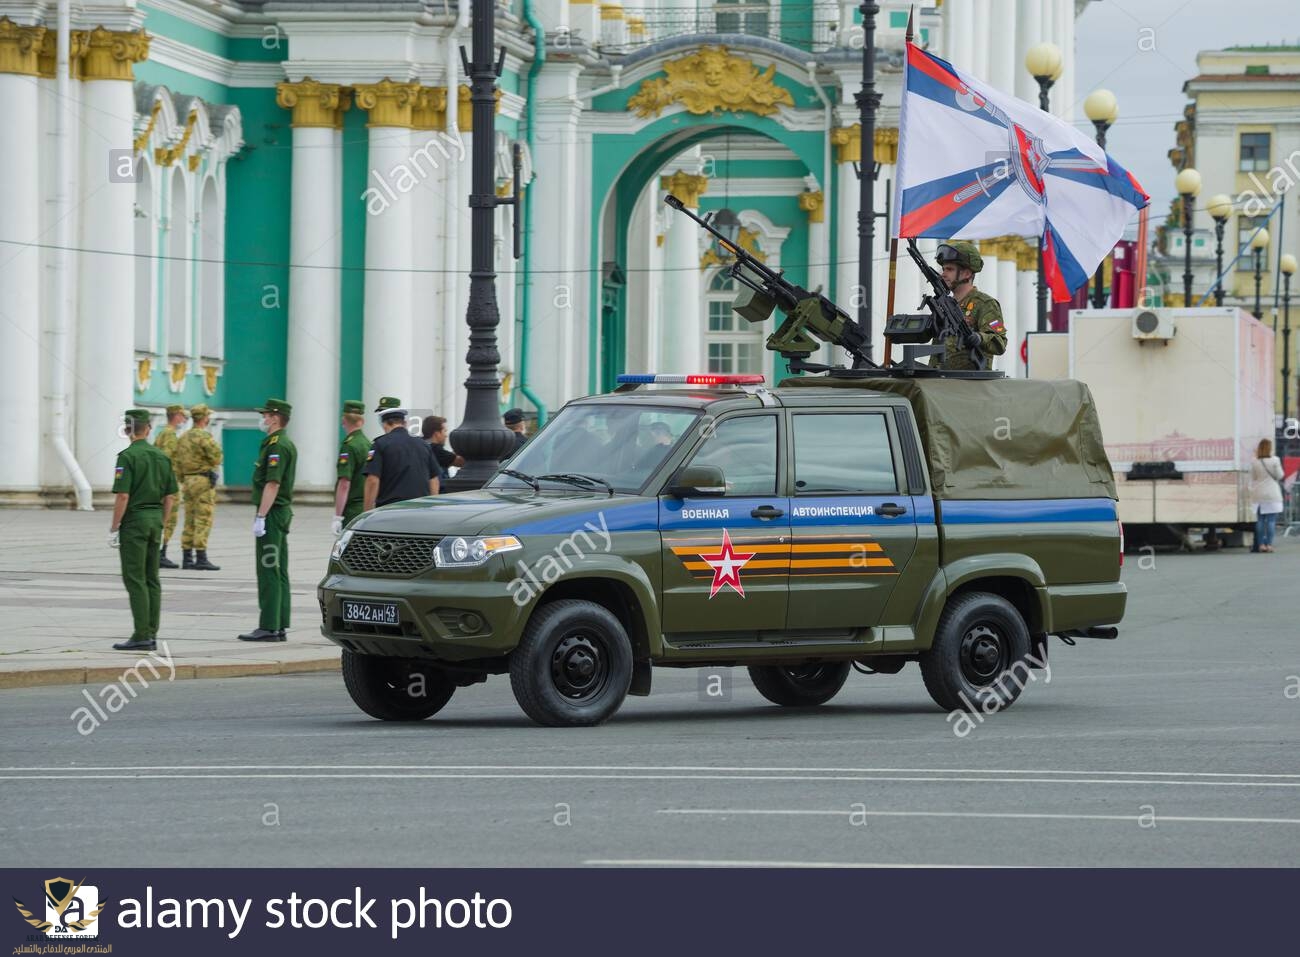 st-petersburgo-rusia-20-de-junio-de-2020-uaz-coche-patriot-de-la-policia-de-trafico-en-el-ensa...jpg